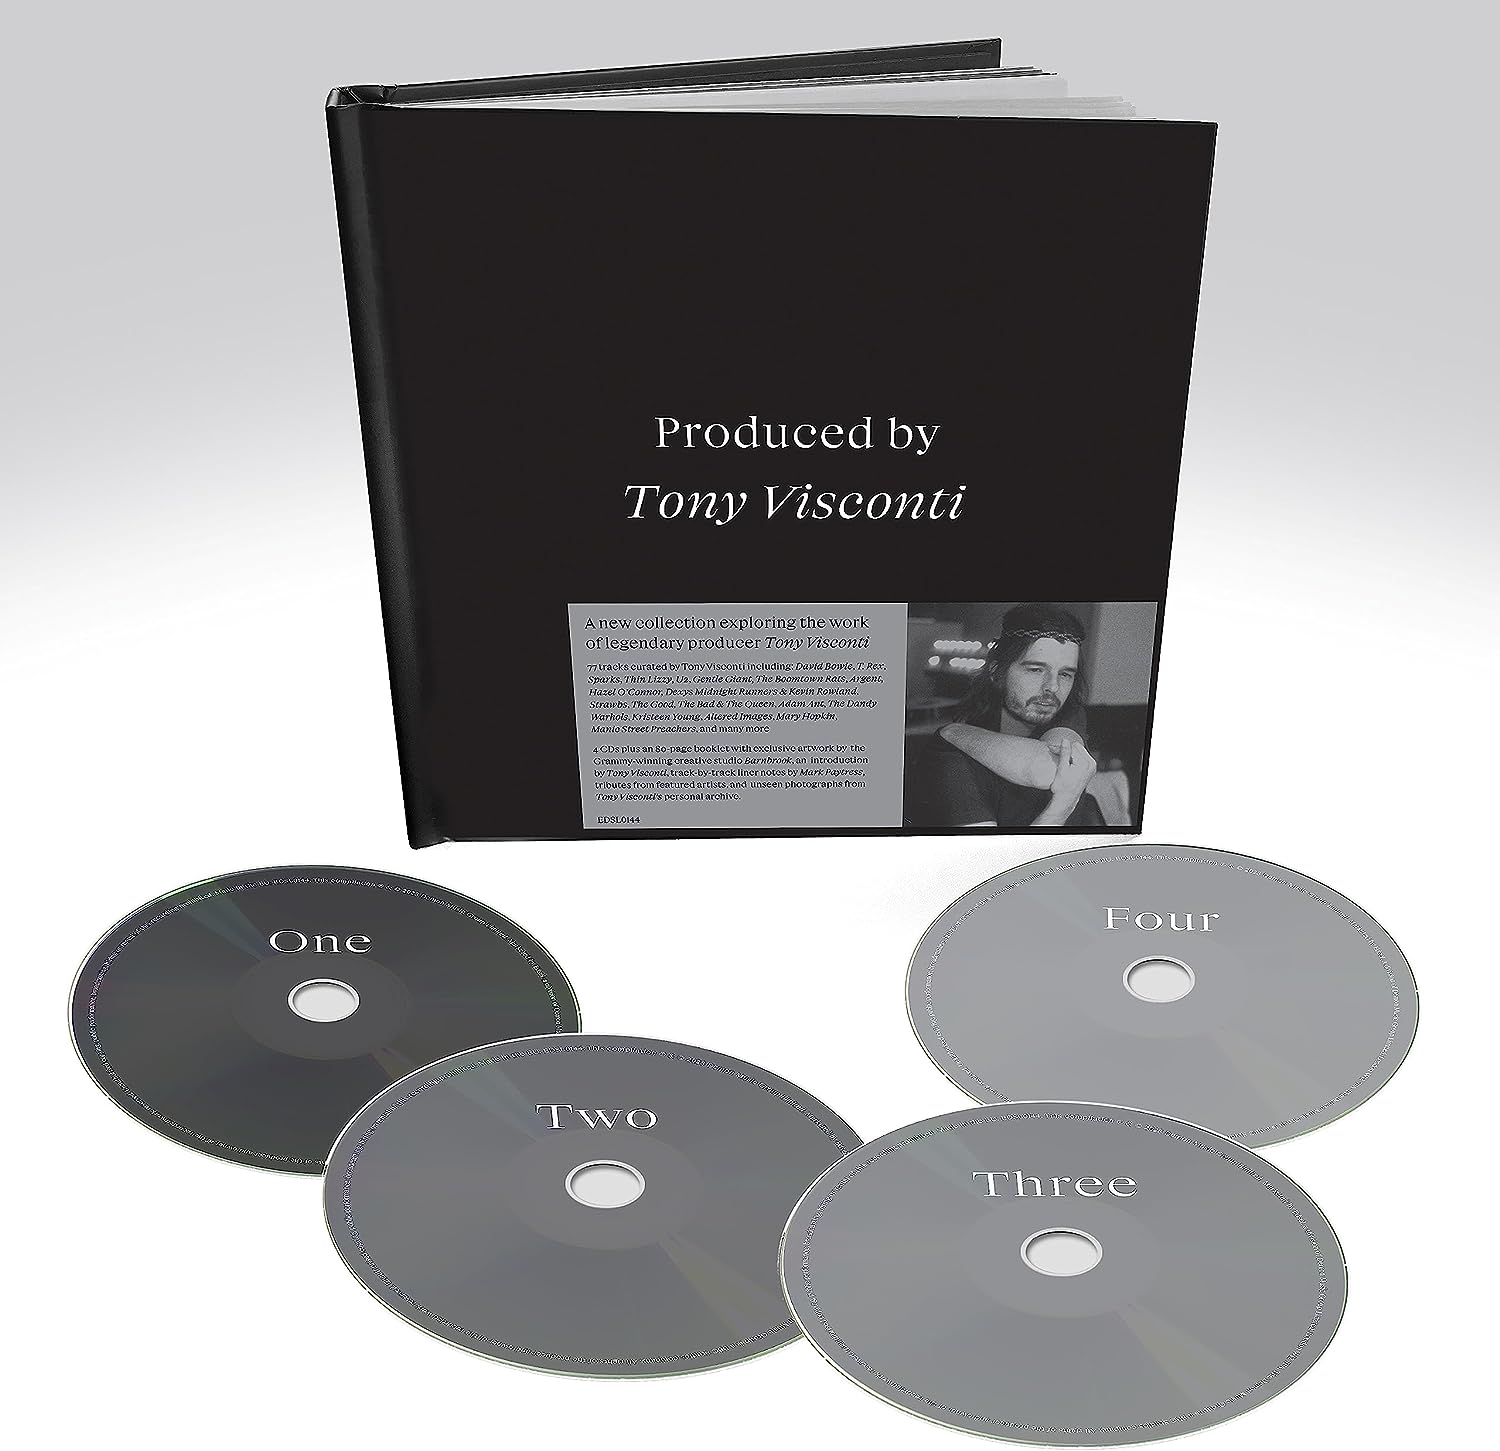 Tony Visconti - Produced By Tony Visconti 4CD (UK Link)